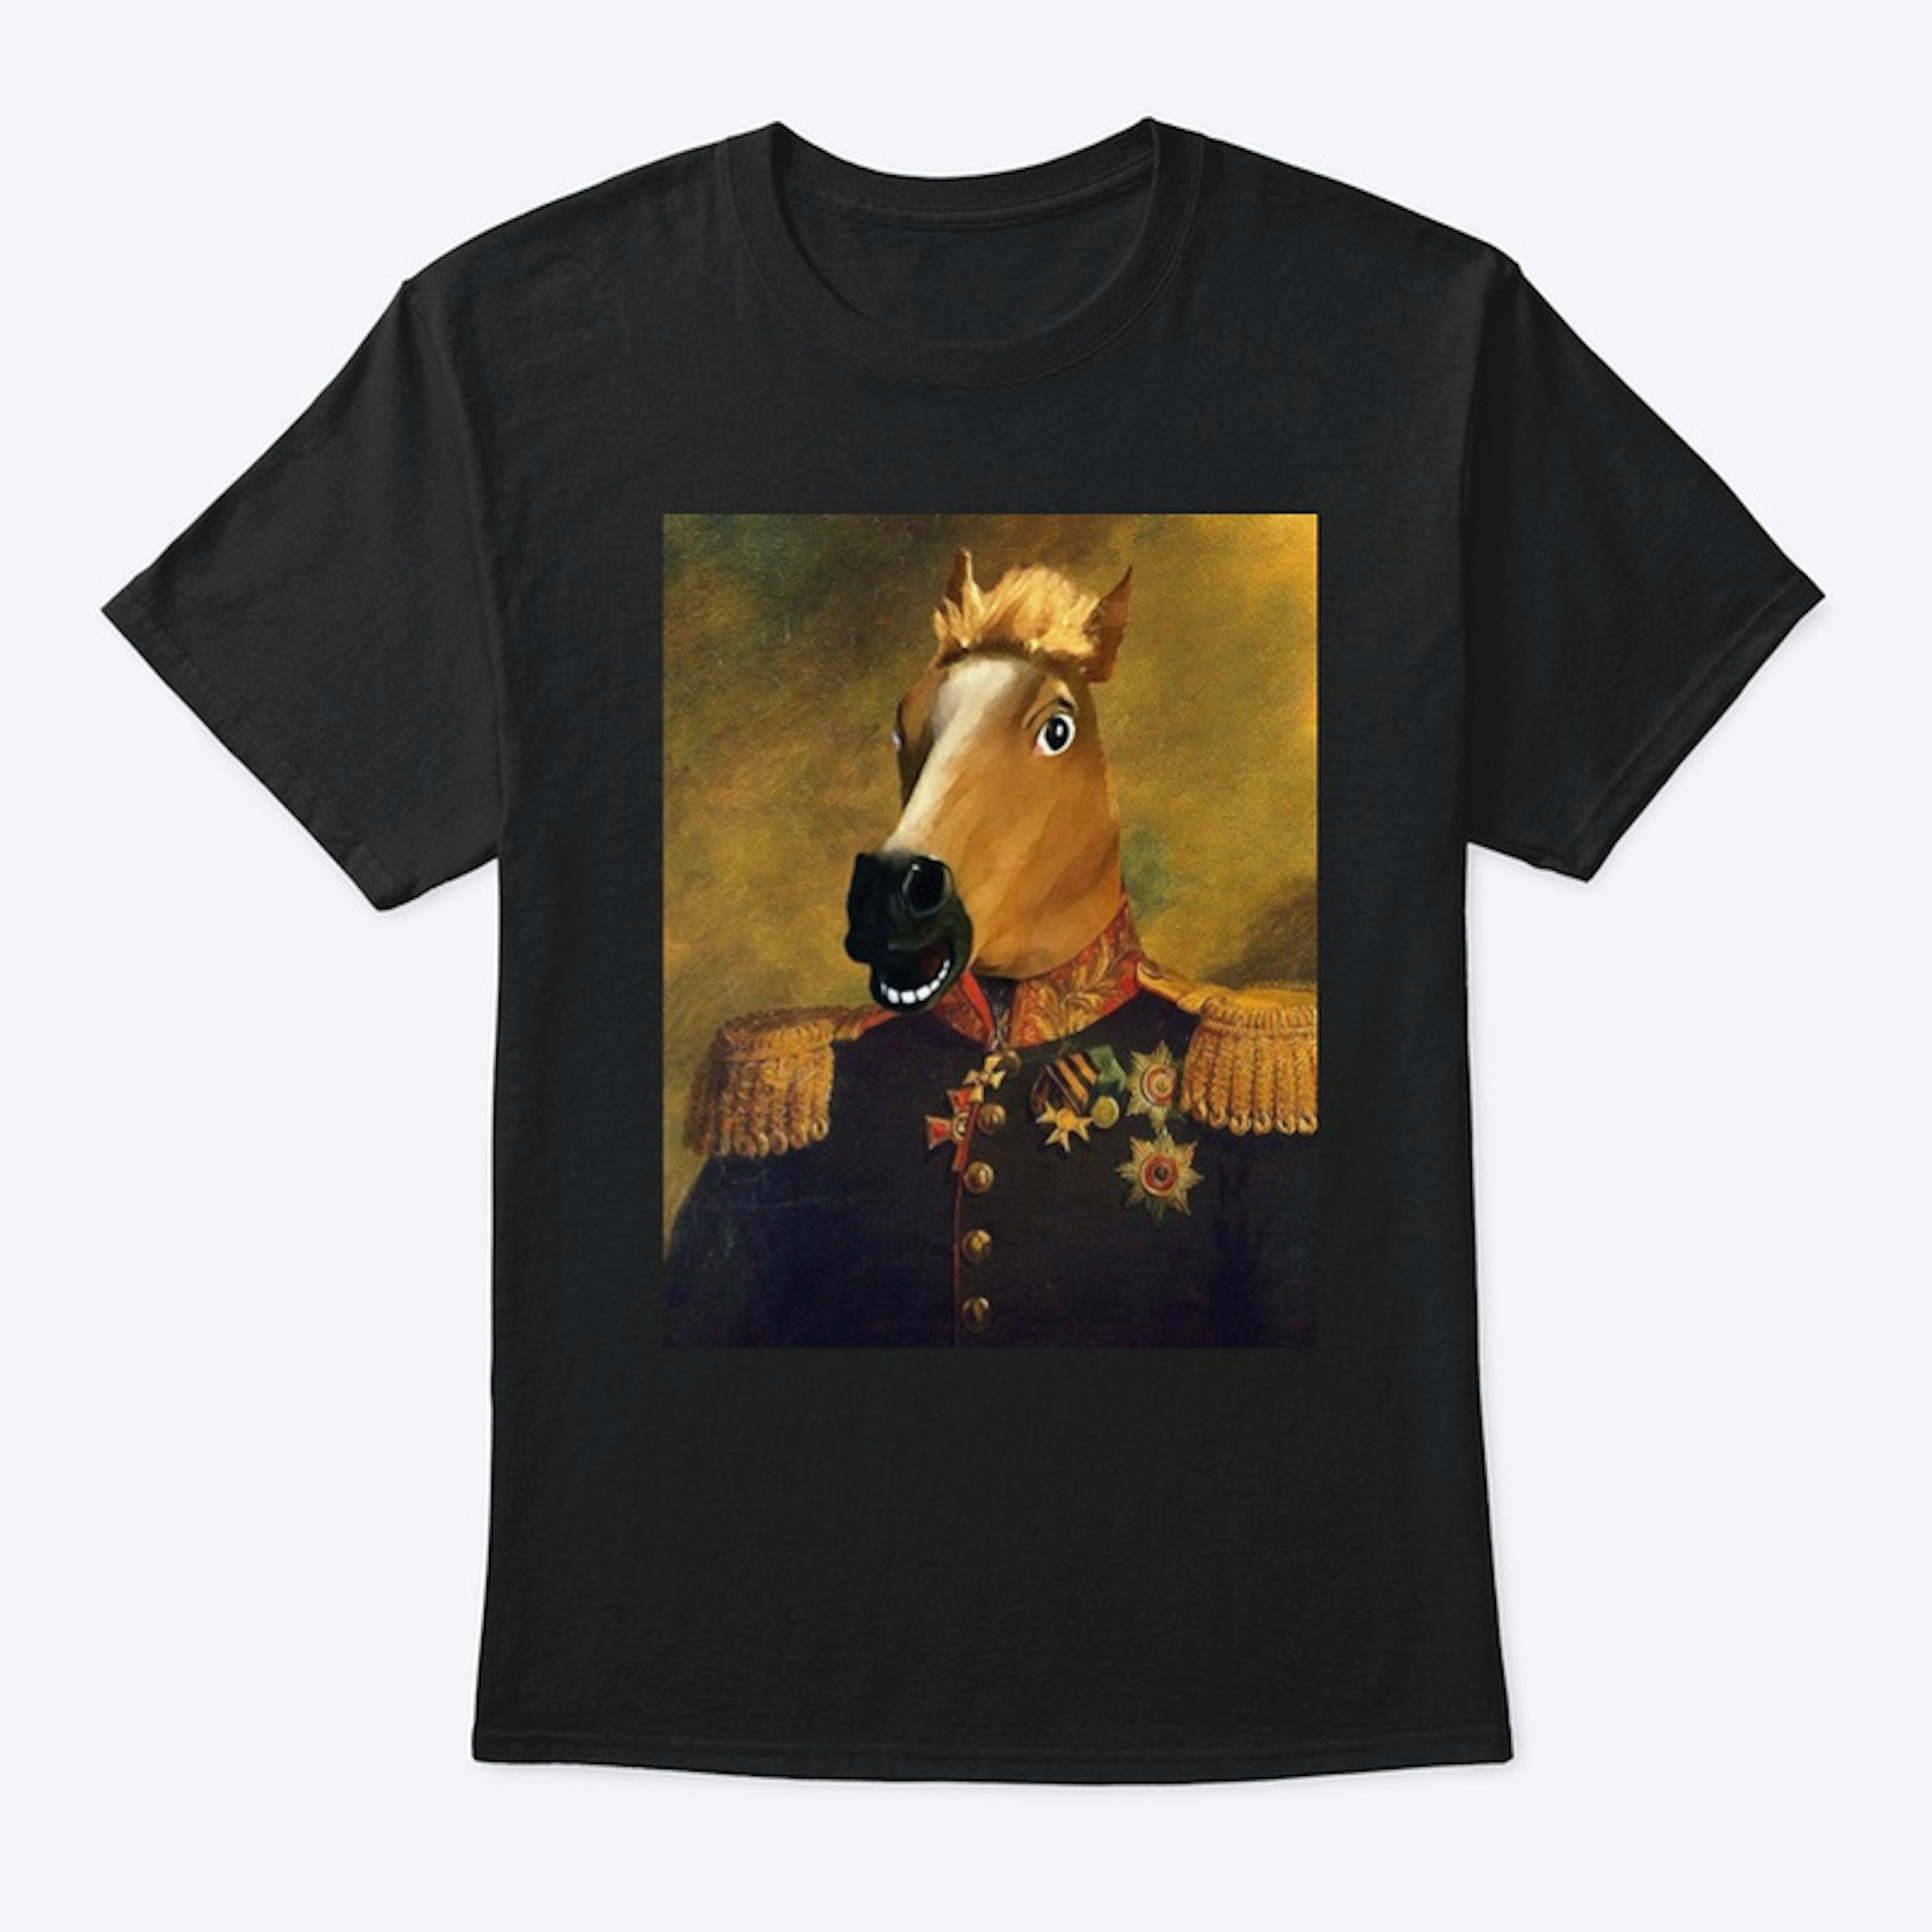 General Buckets T-Shirt